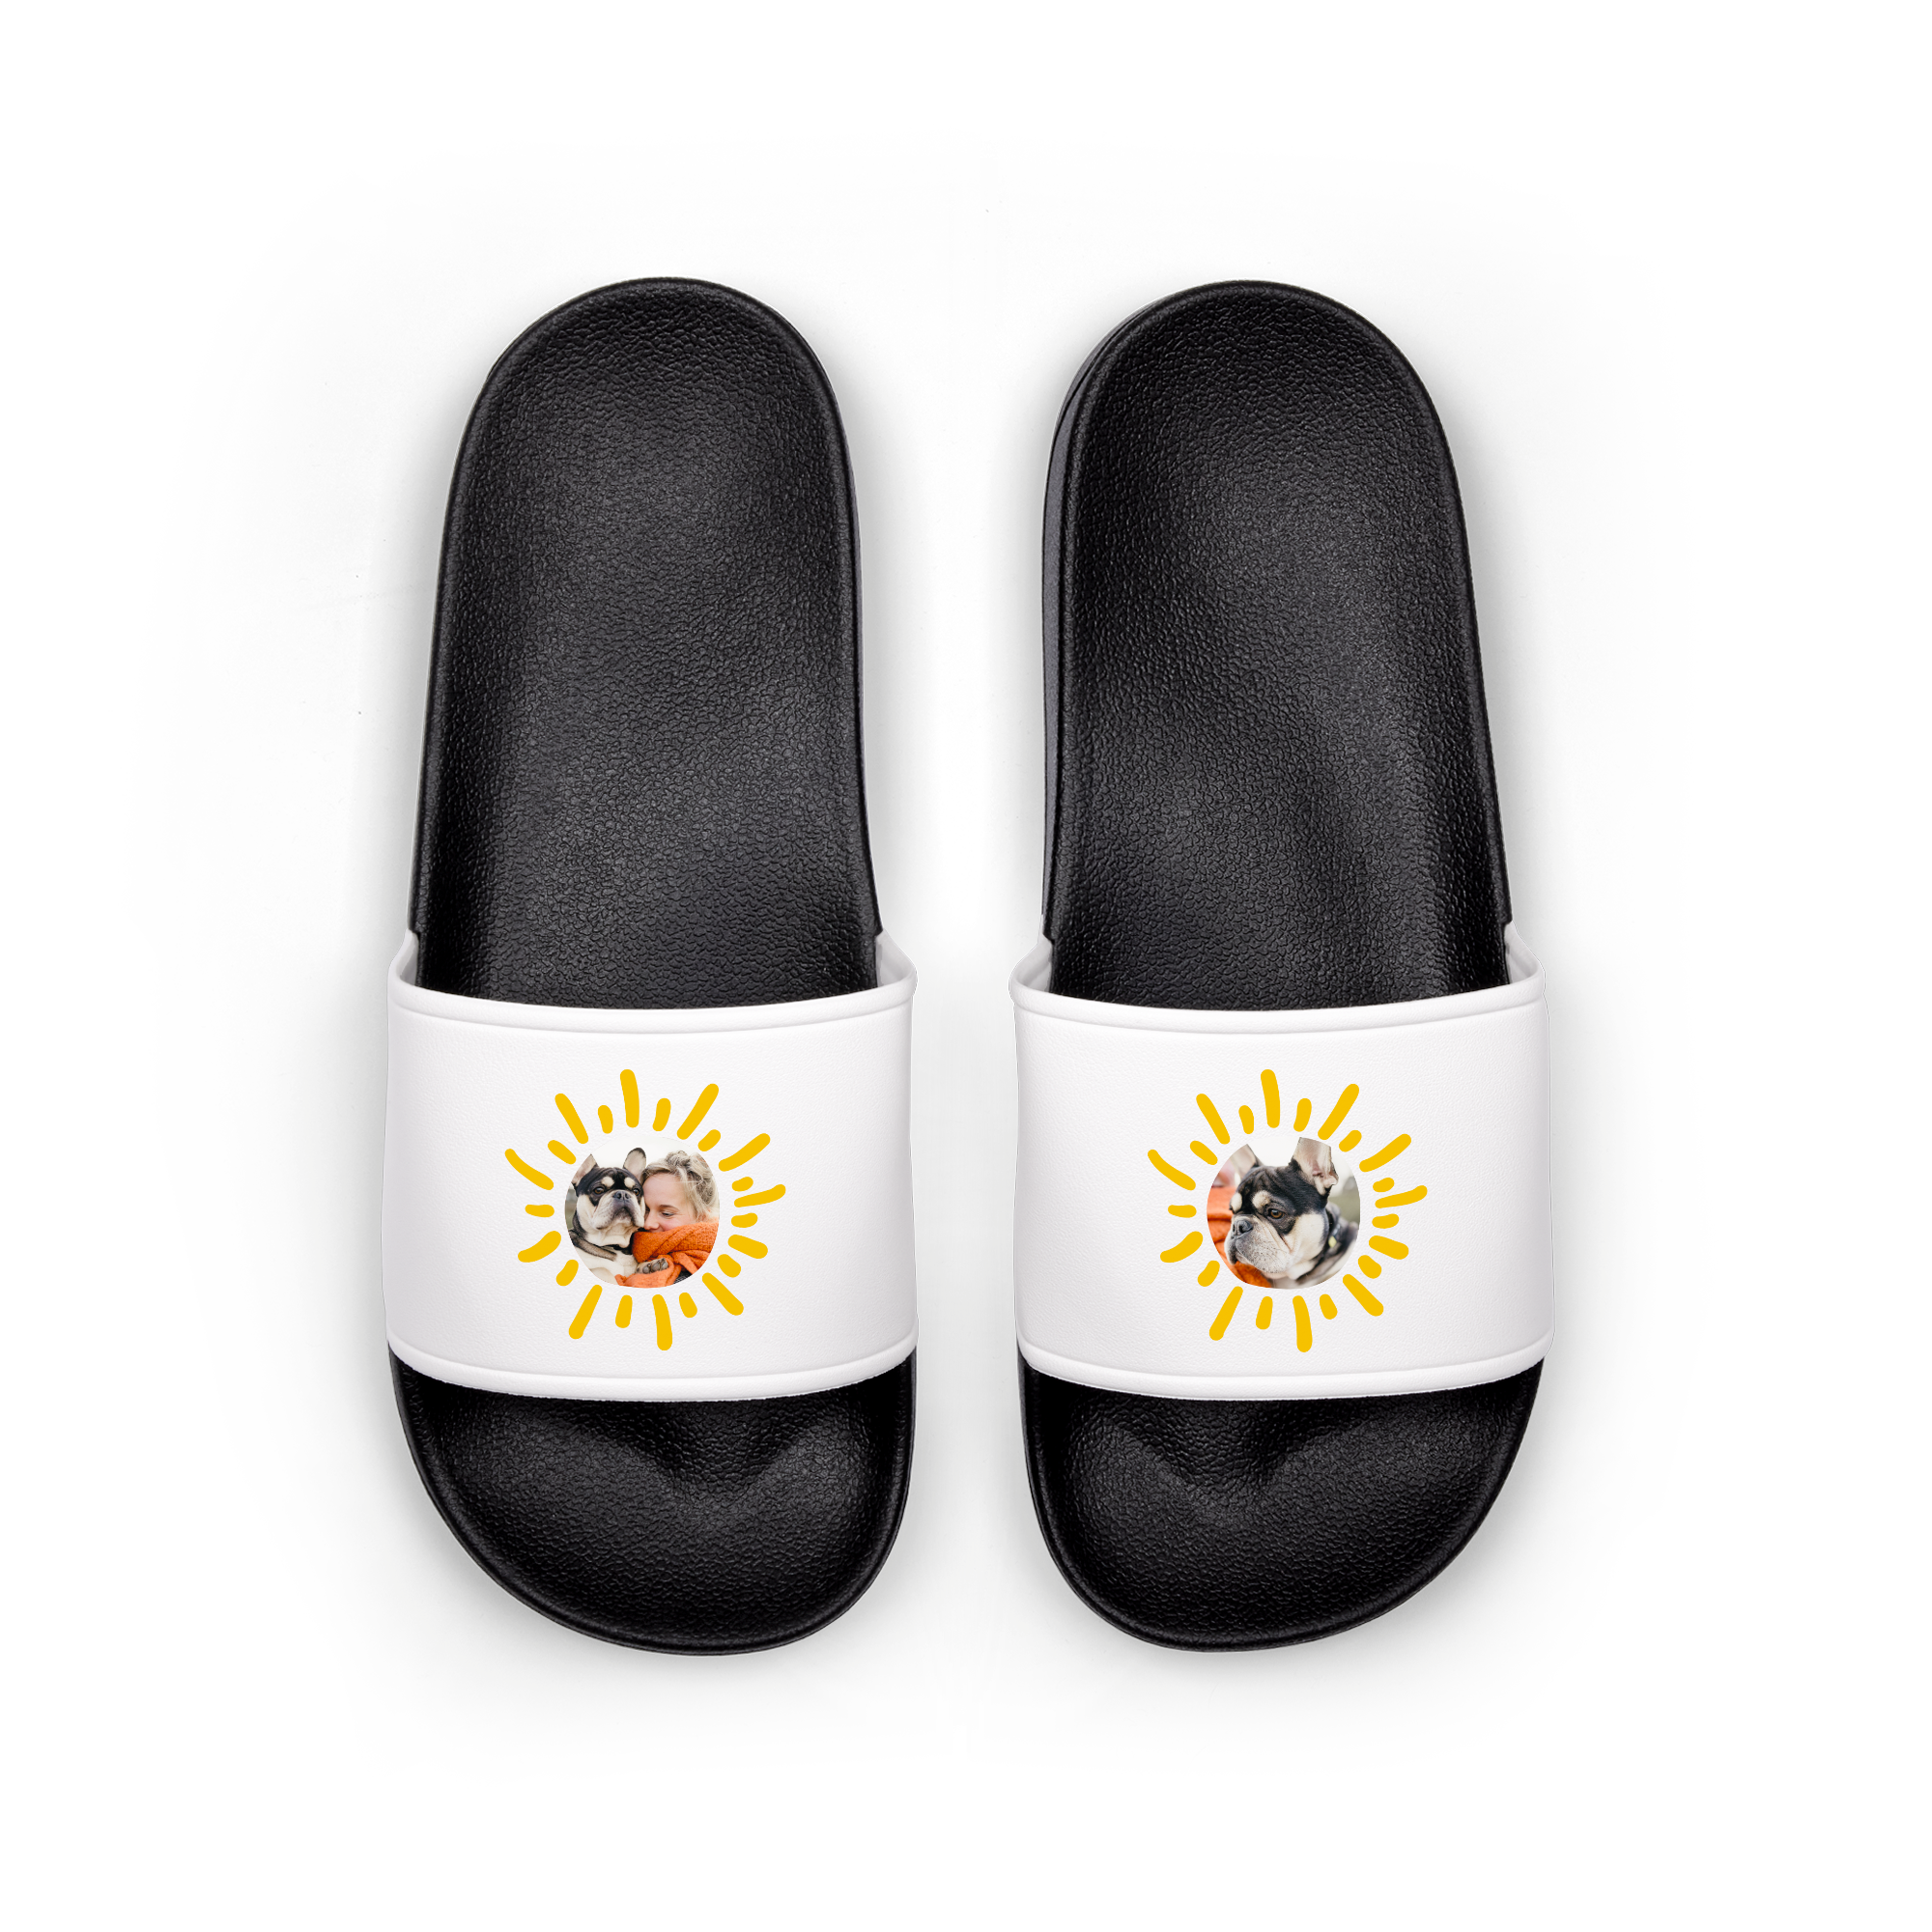 Personalised sliders flip-flops - Black - EU 42